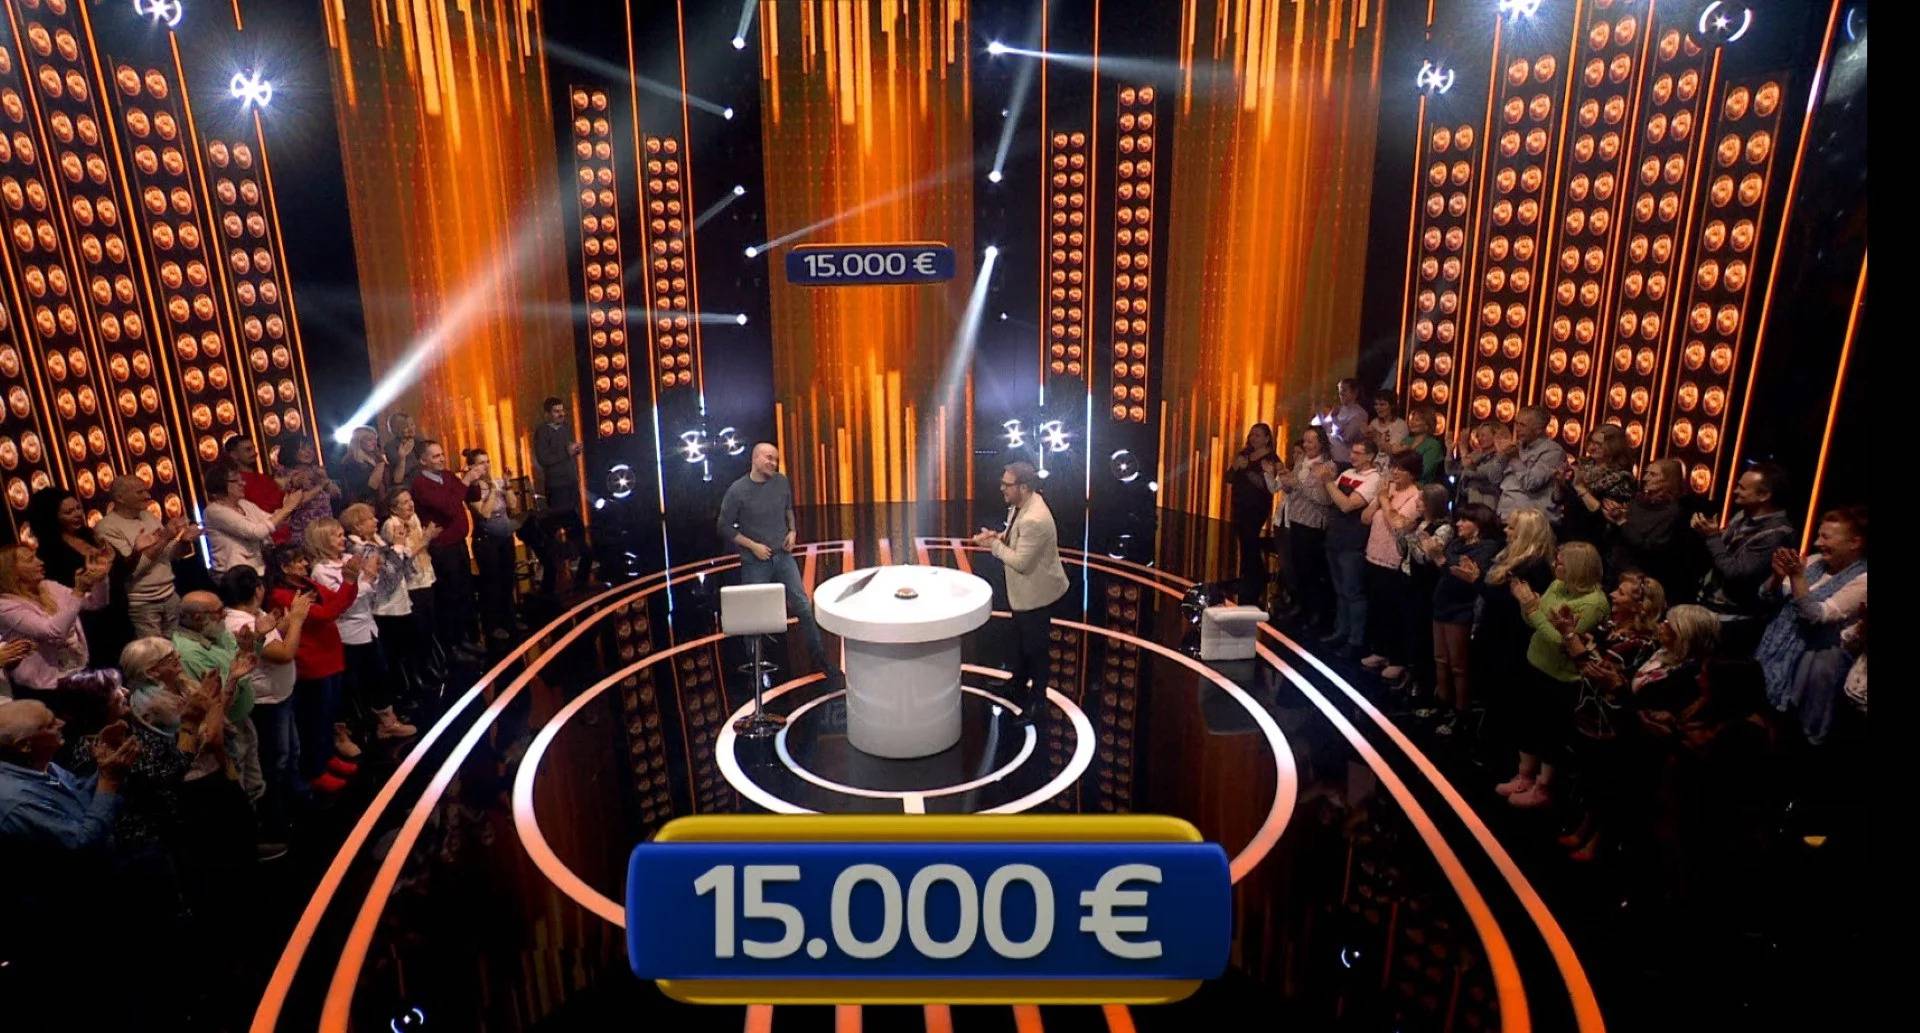 Filip iz Jokera osvojio 15.000 € pa otkrio: 'Na neke kvizove sam se prijavljivao po 300 puta...'